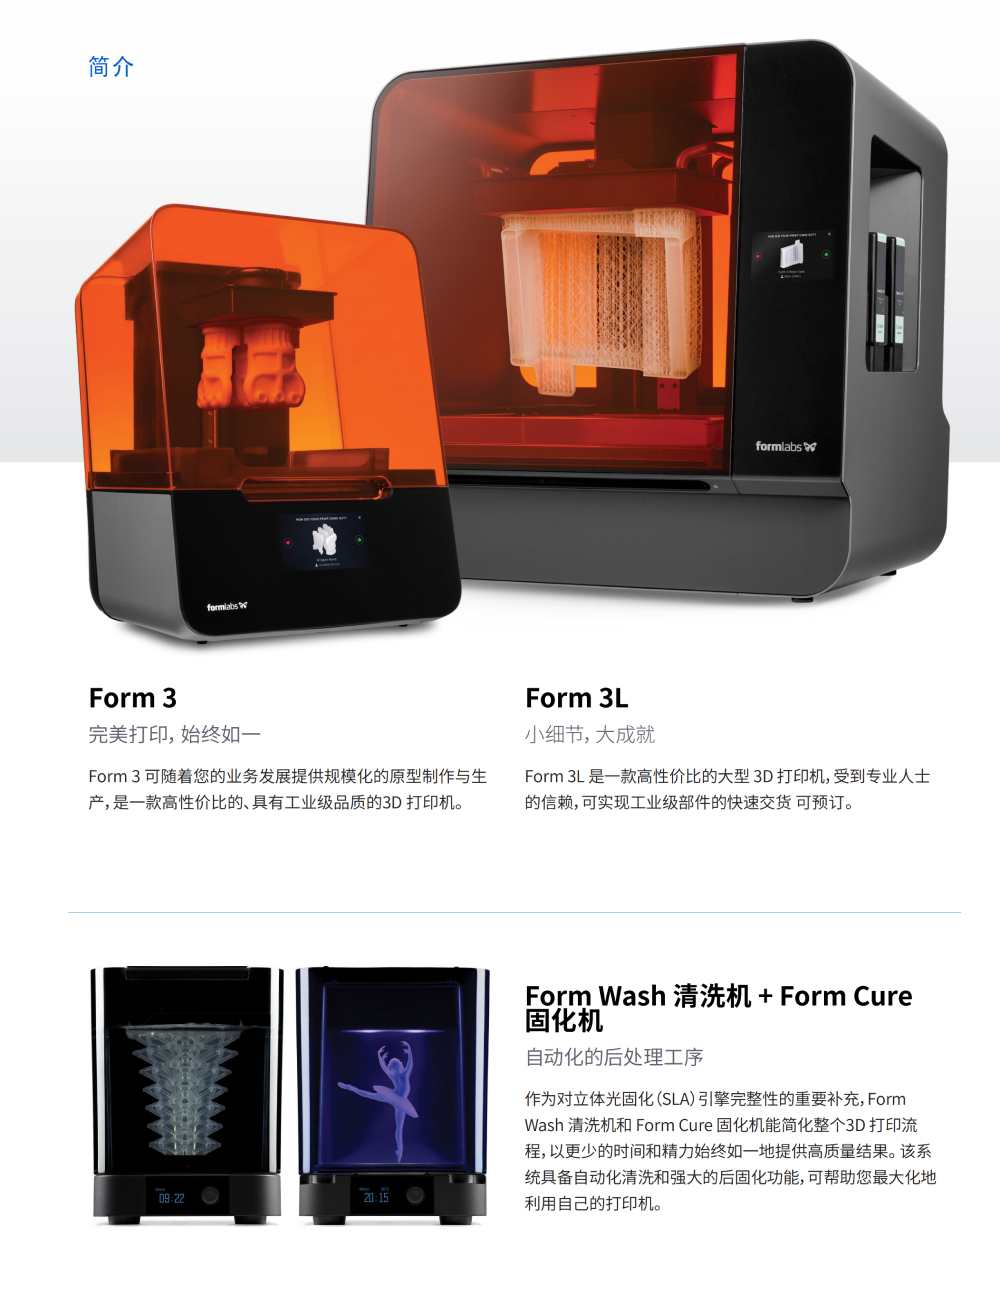 打印效果很好工业级打印机fdm尼龙 3D打印机2